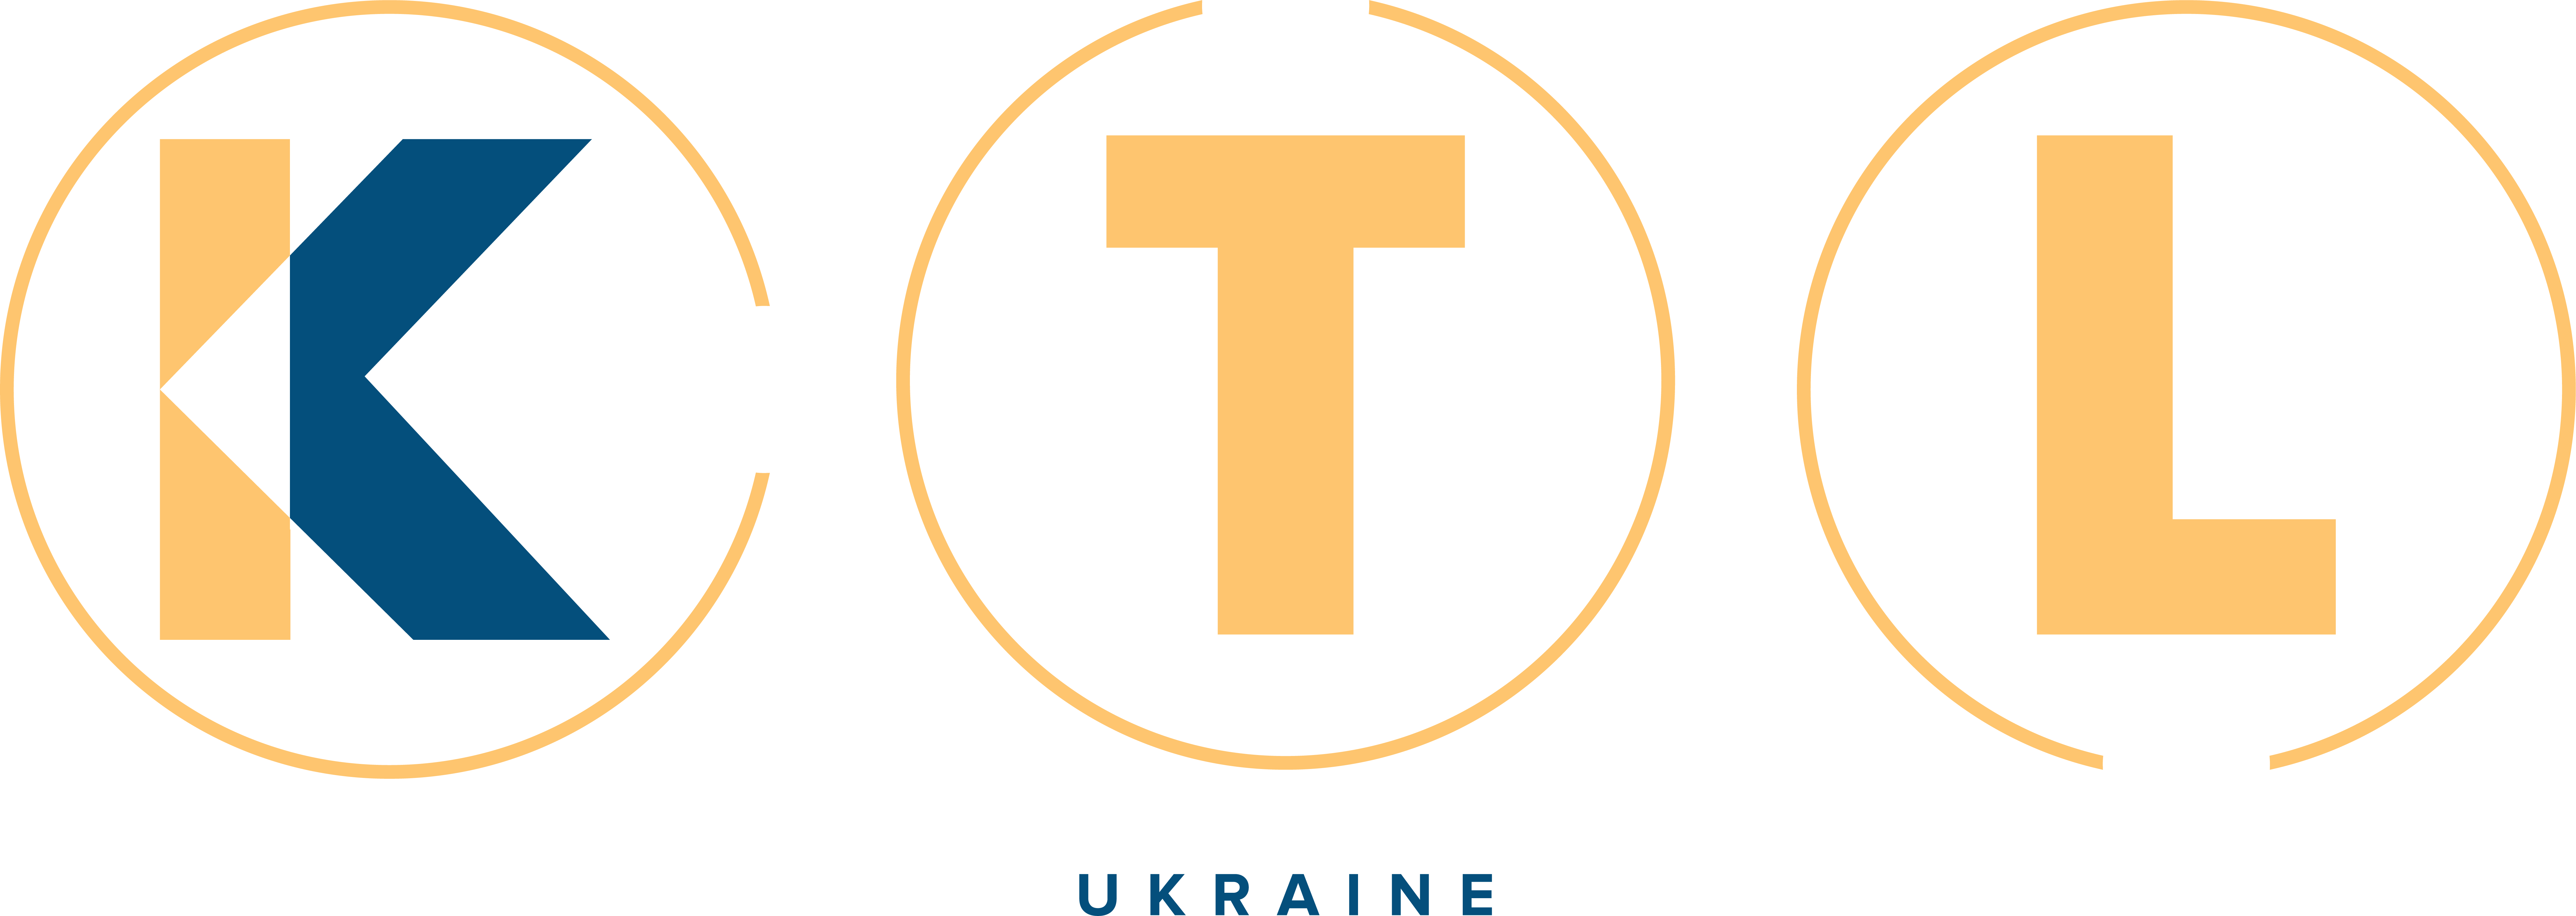 KTL Ukraine